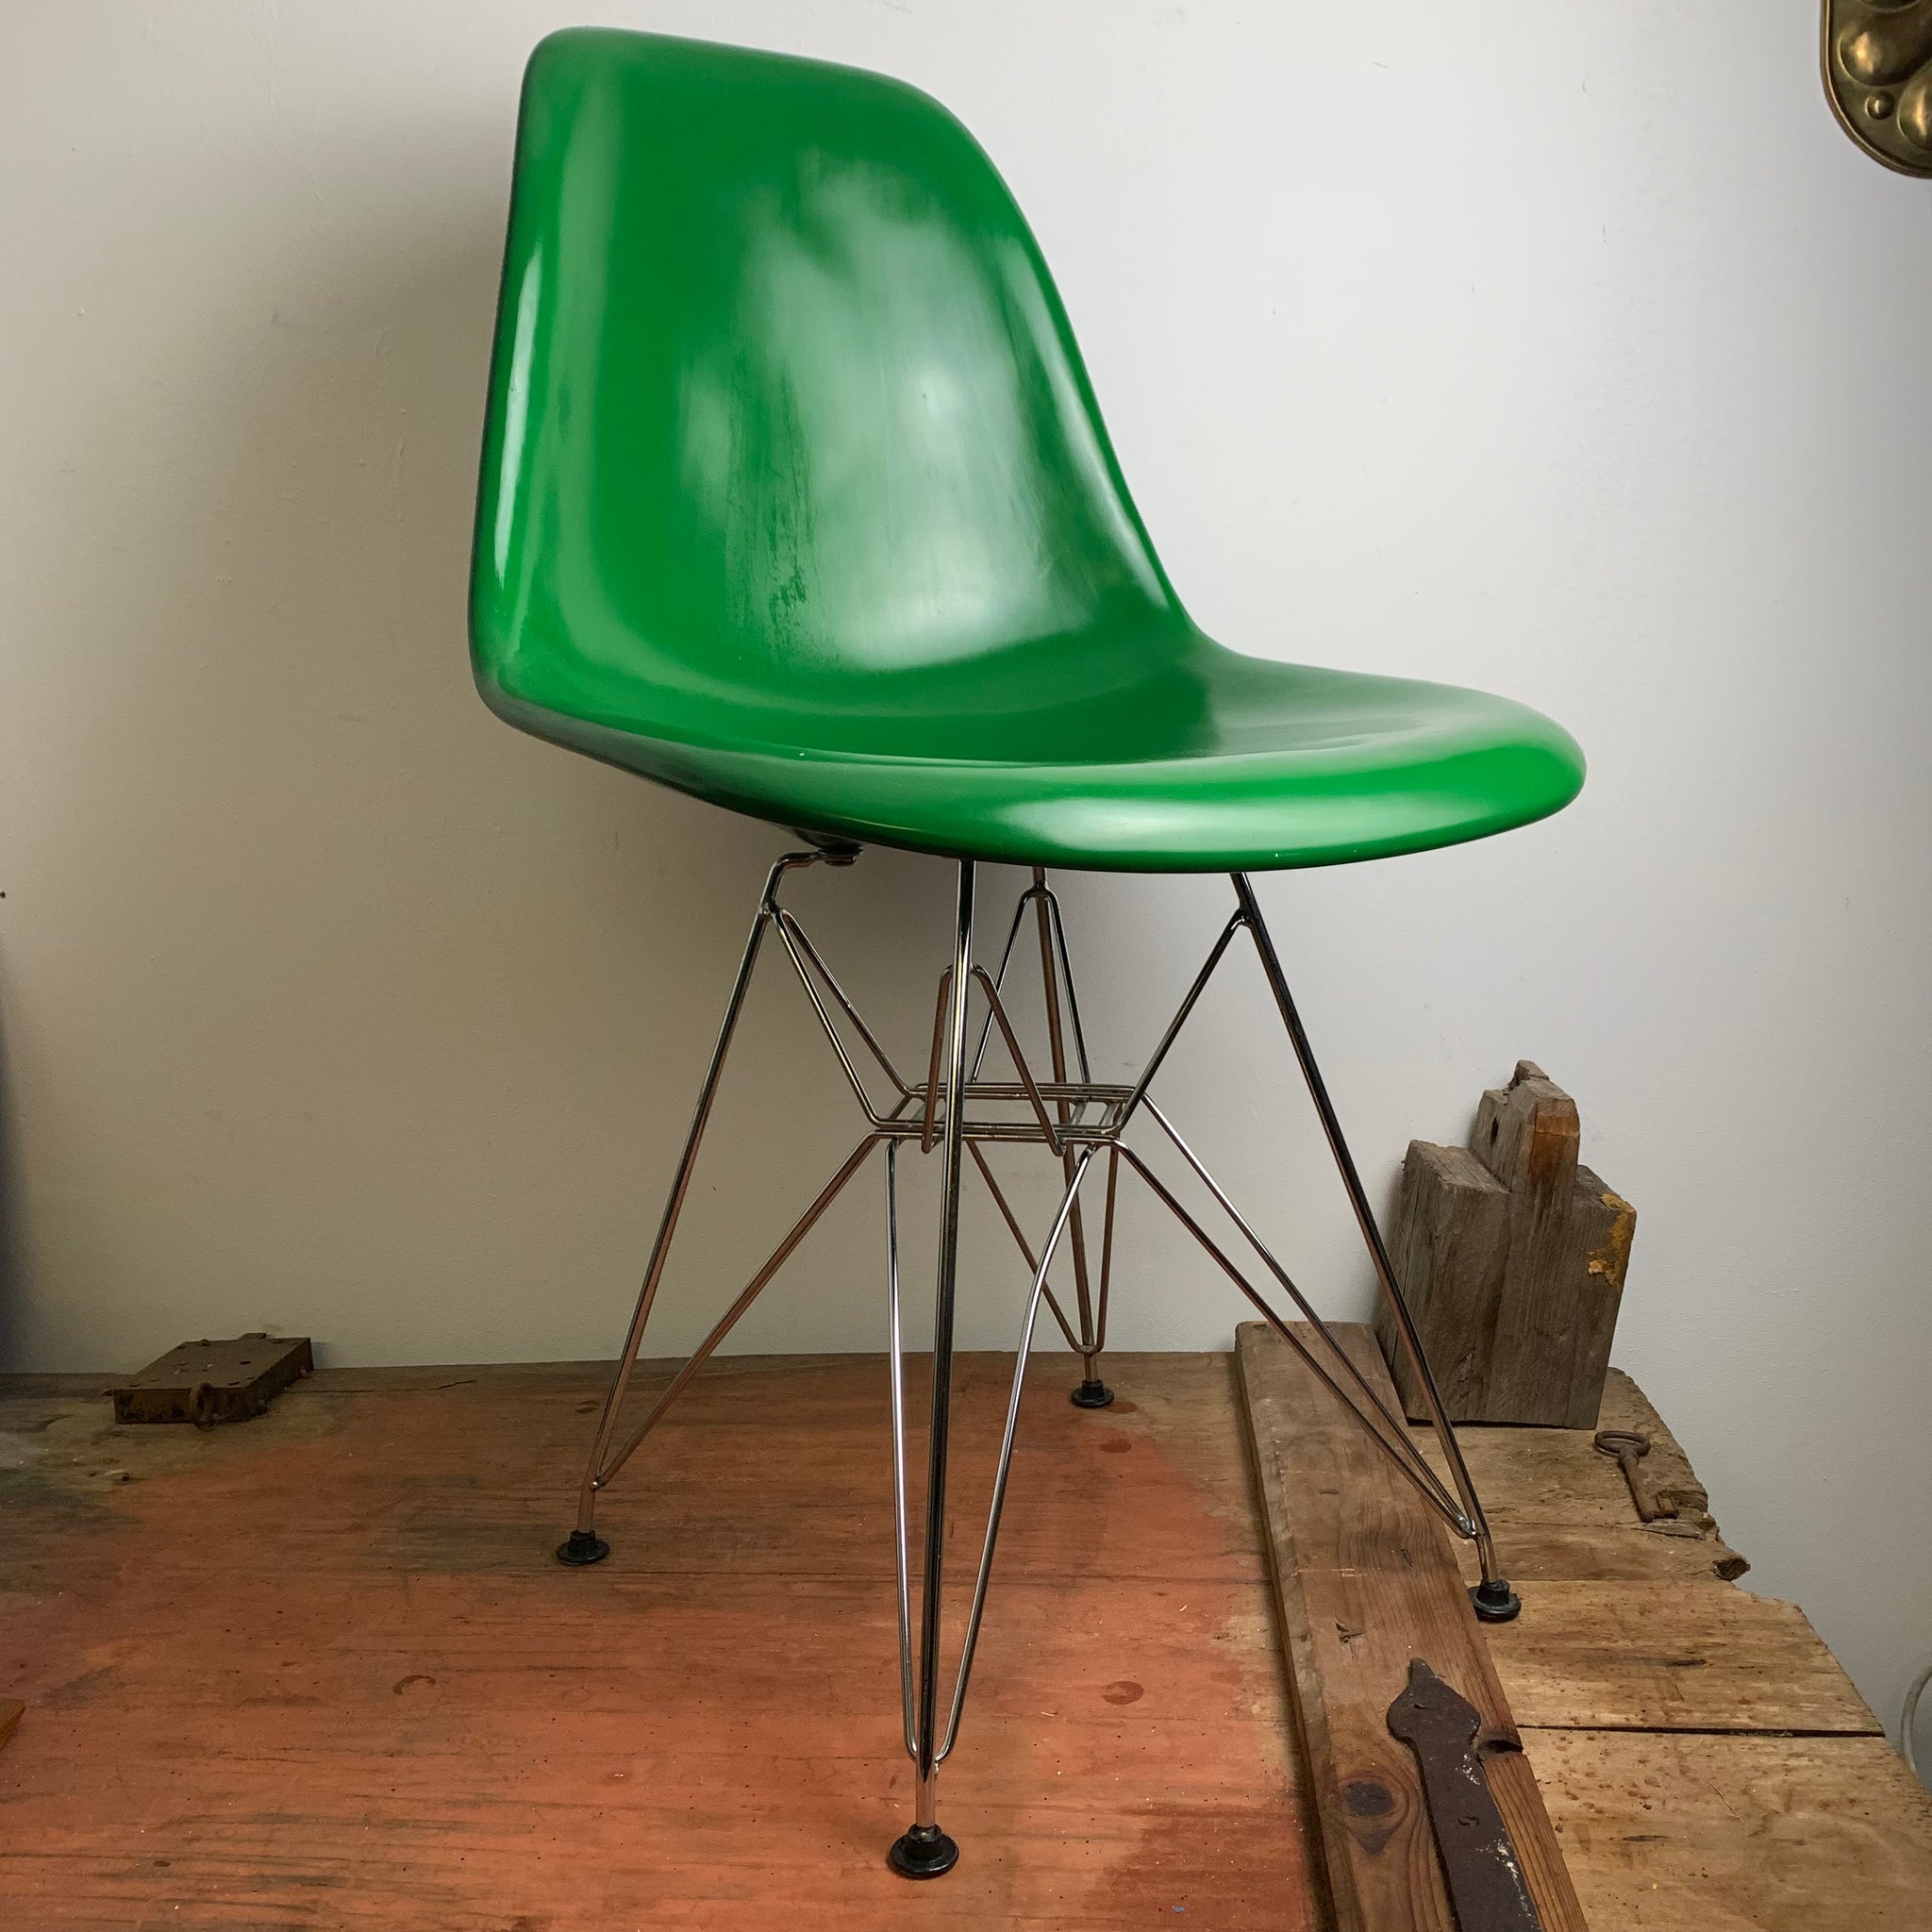 Vintage DSR Chair von Charles und Ray Eames von Herman Miller